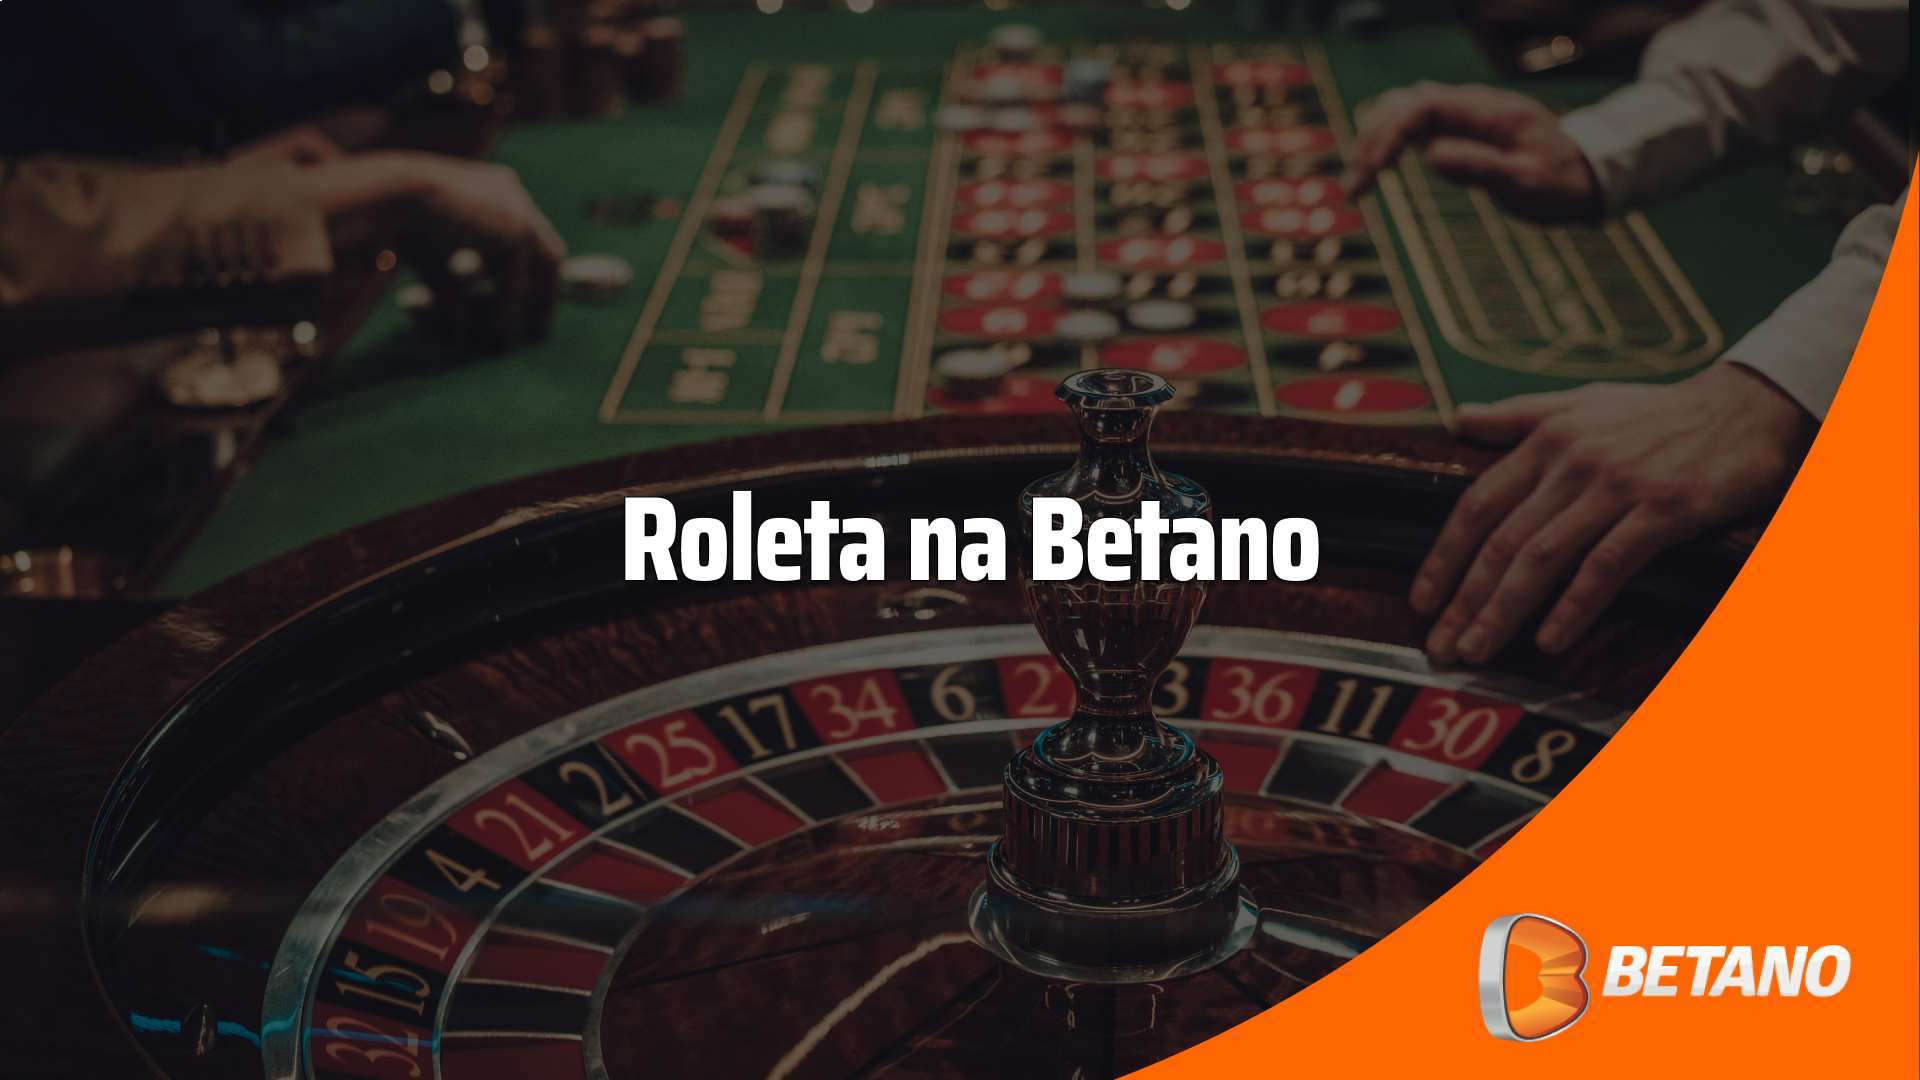 Roleta Betano: ganhe bônus de boas vindas para jogar